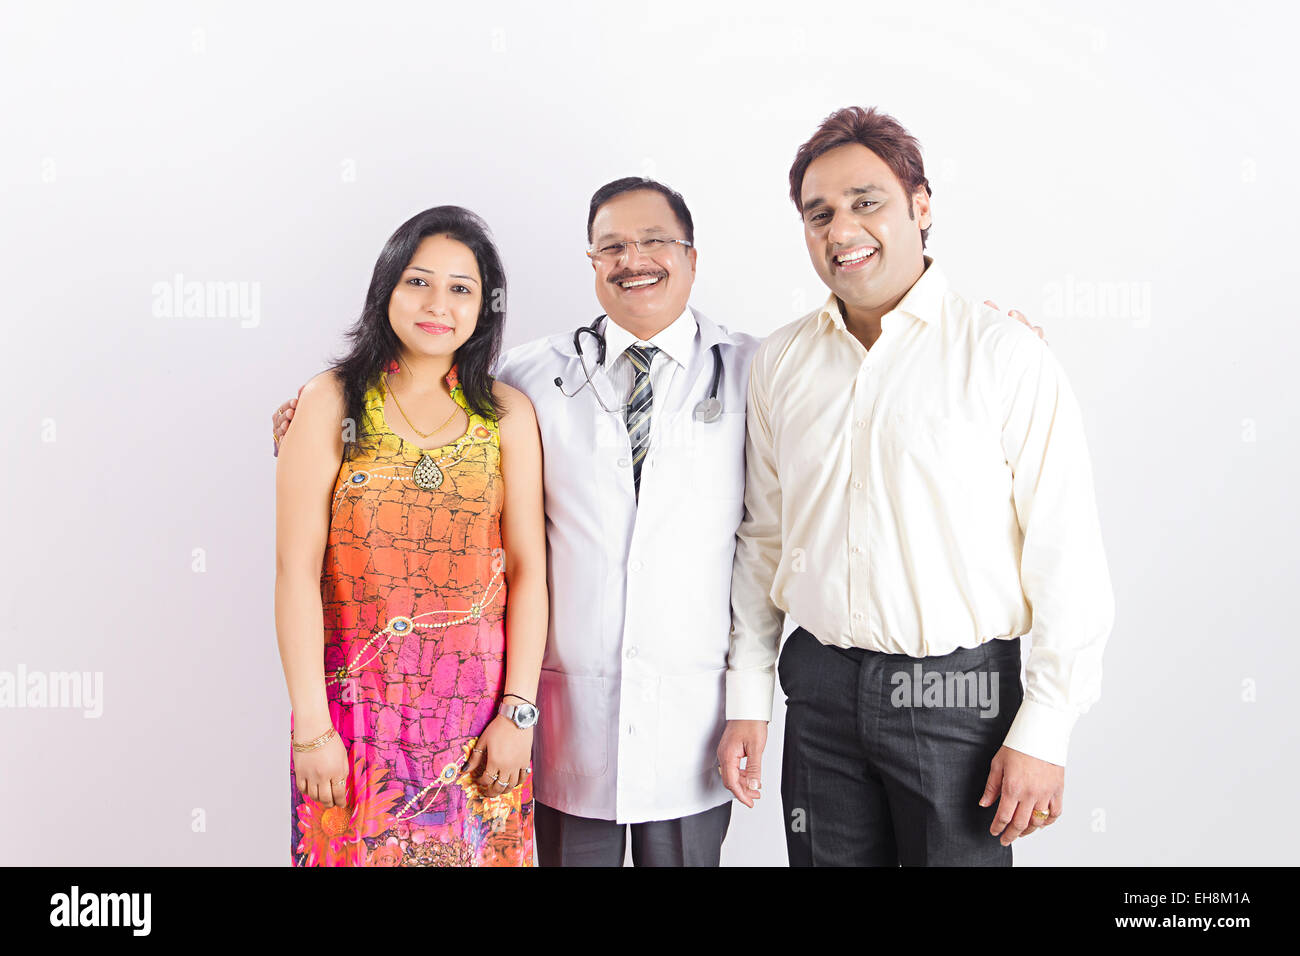 Les indiens 3 médecin et traitement Santé Couple marié Banque D'Images